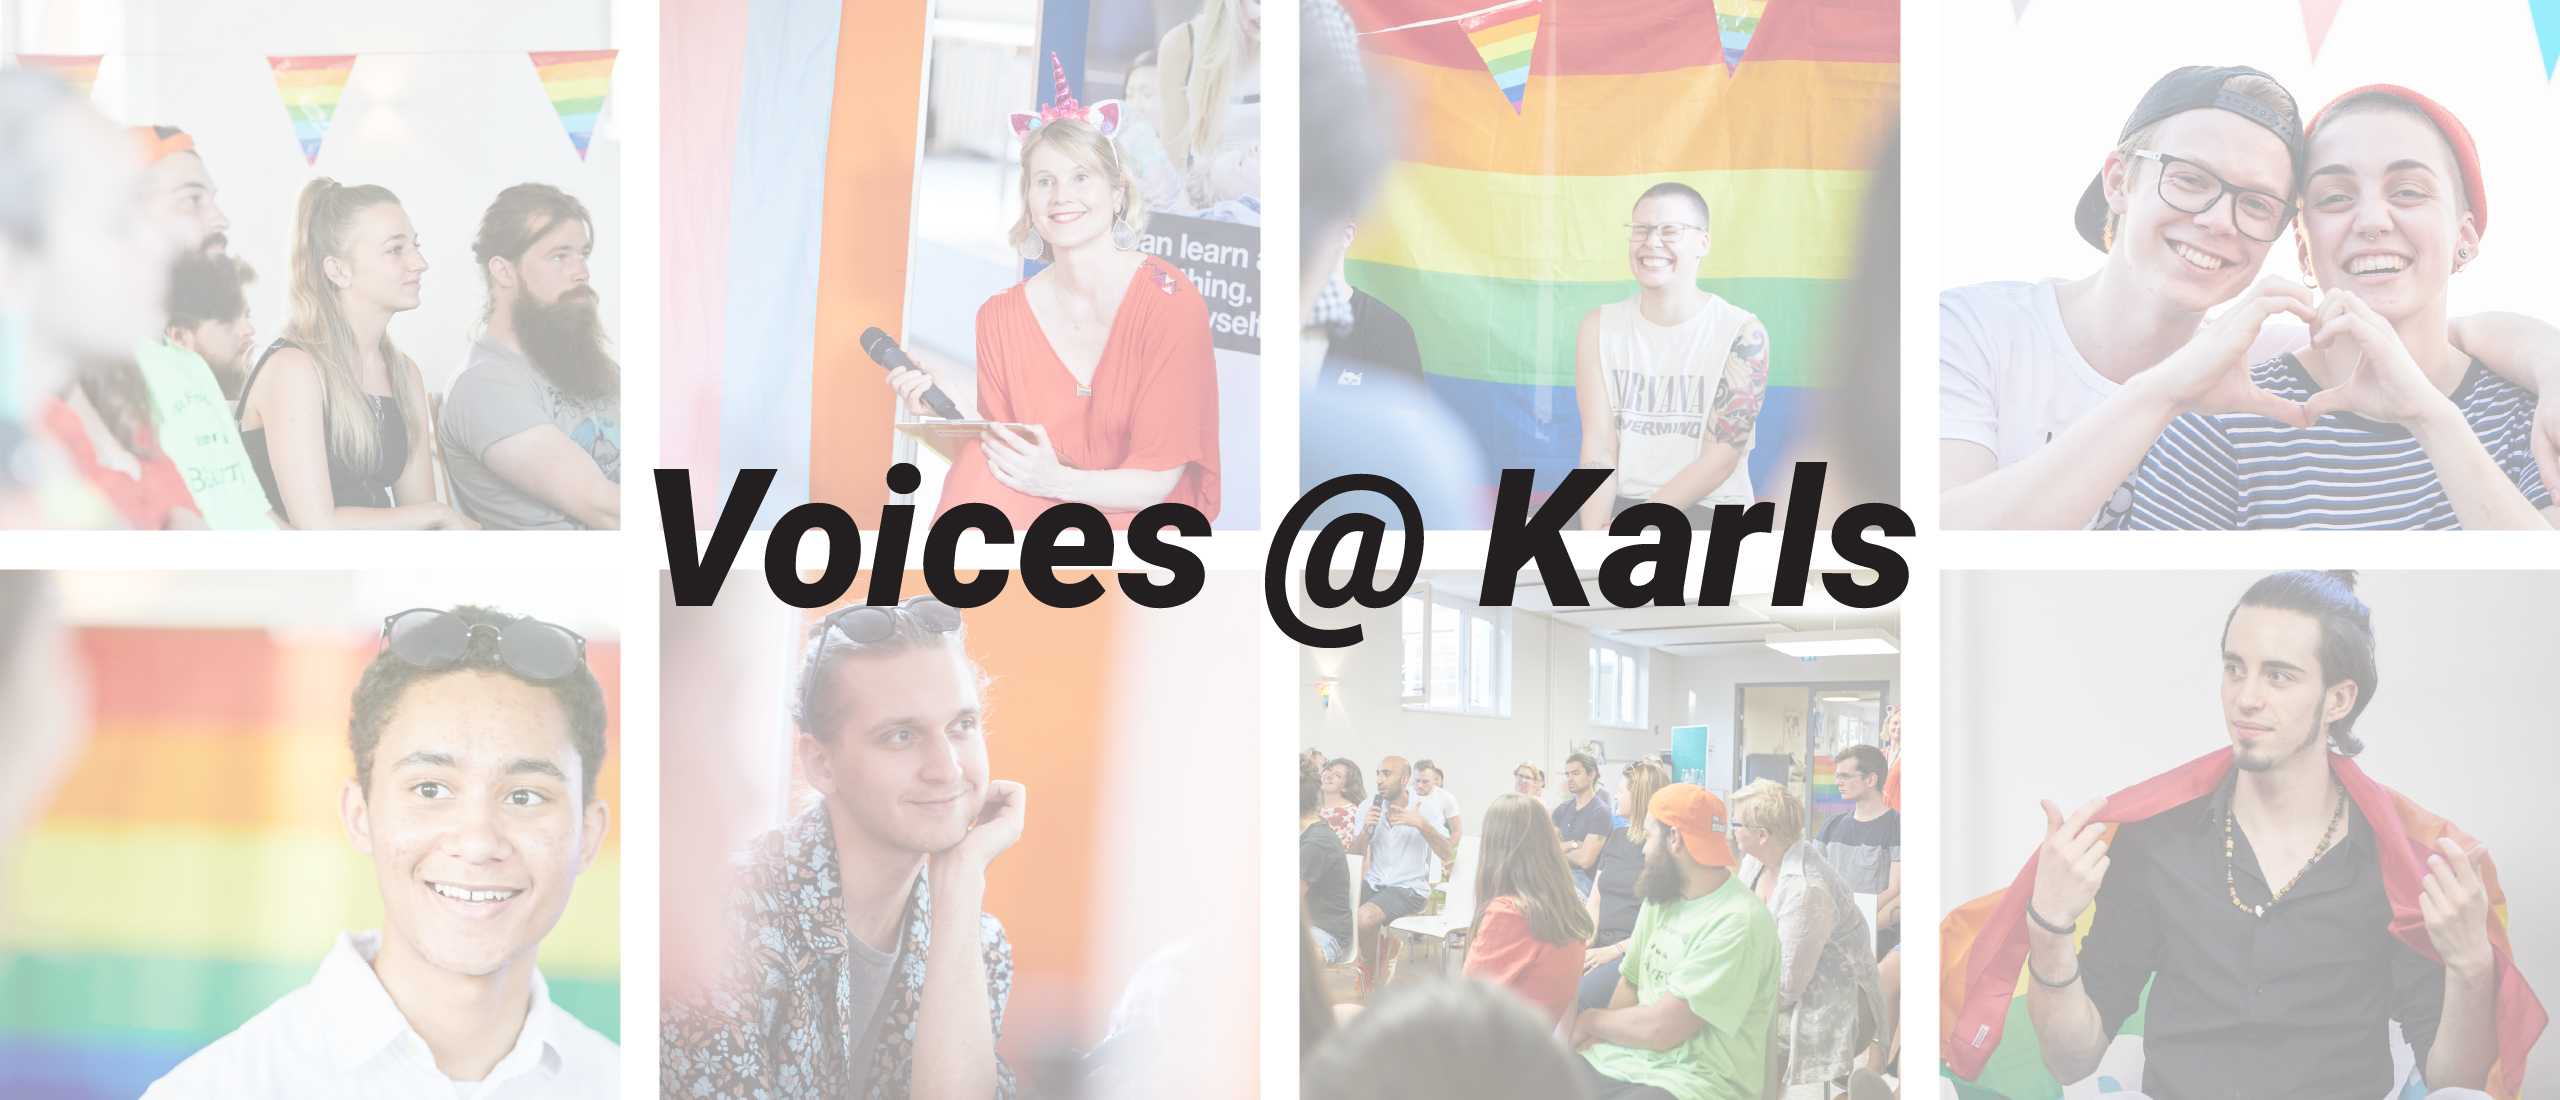 Voices@Karls